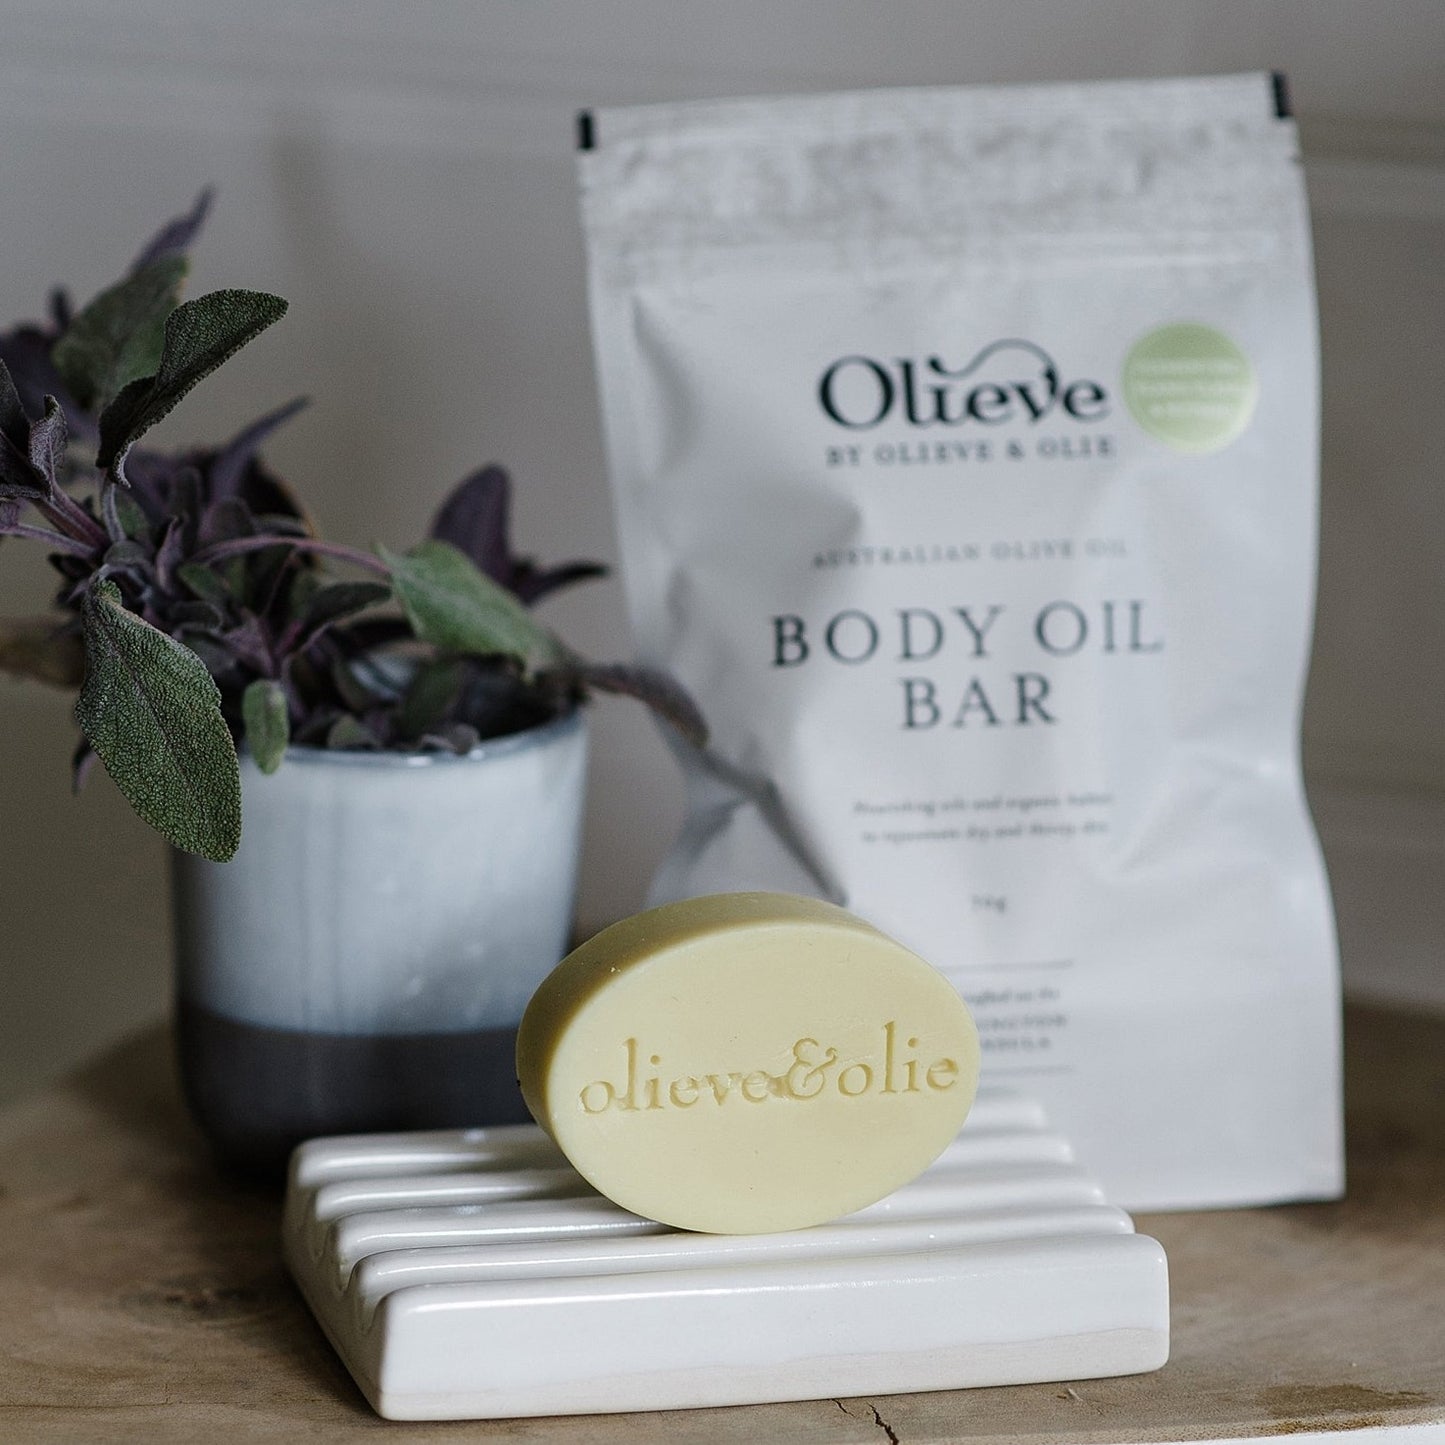 Olieve & Olie: Body Oil Bar